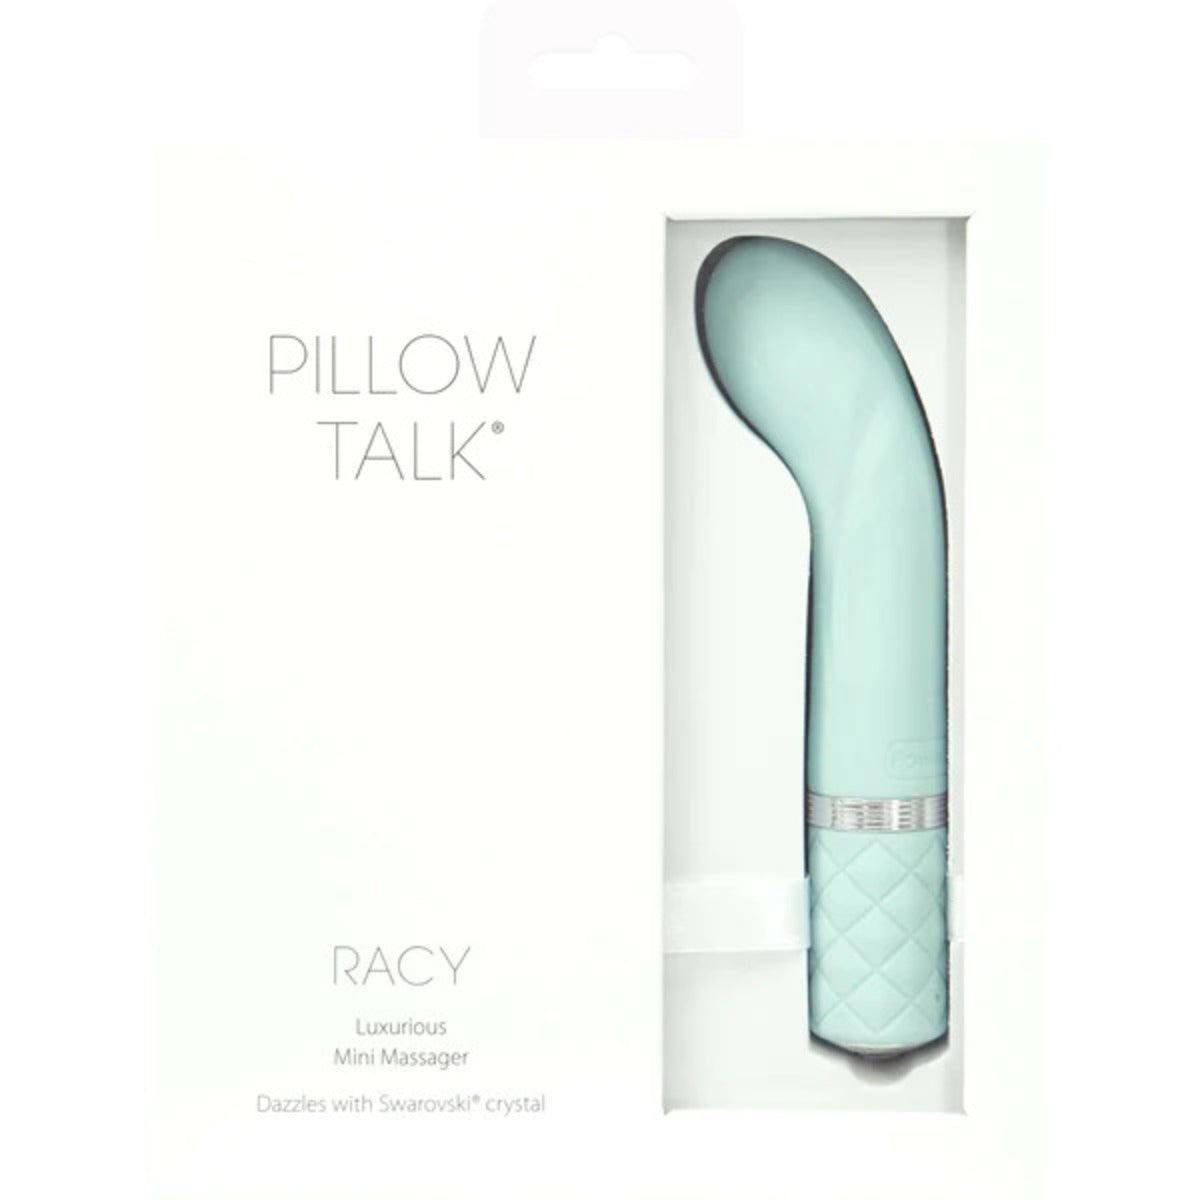 Pillow Talk Mini G Spot Vibrator